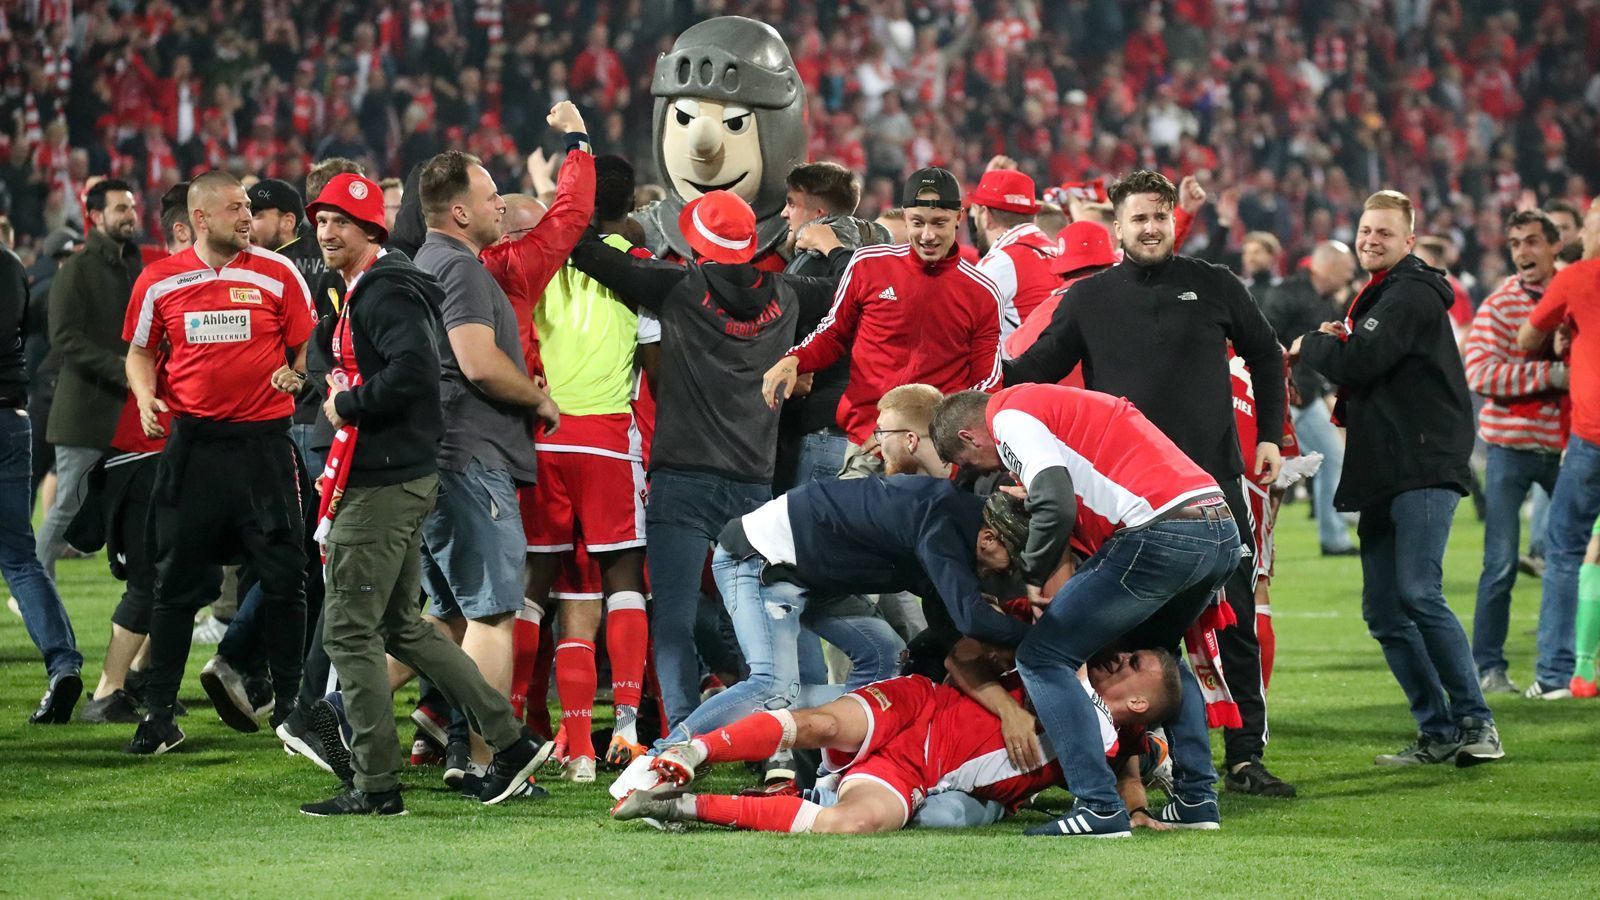 
                <strong>Der Startschuss für eine grenzenlose Aufstiegsparty</strong><br>
                Fans und Spieler der Berliner feierten ausgelassen den ersten Aufstieg der Vereinsgeschichte in die Bundesliga.
              